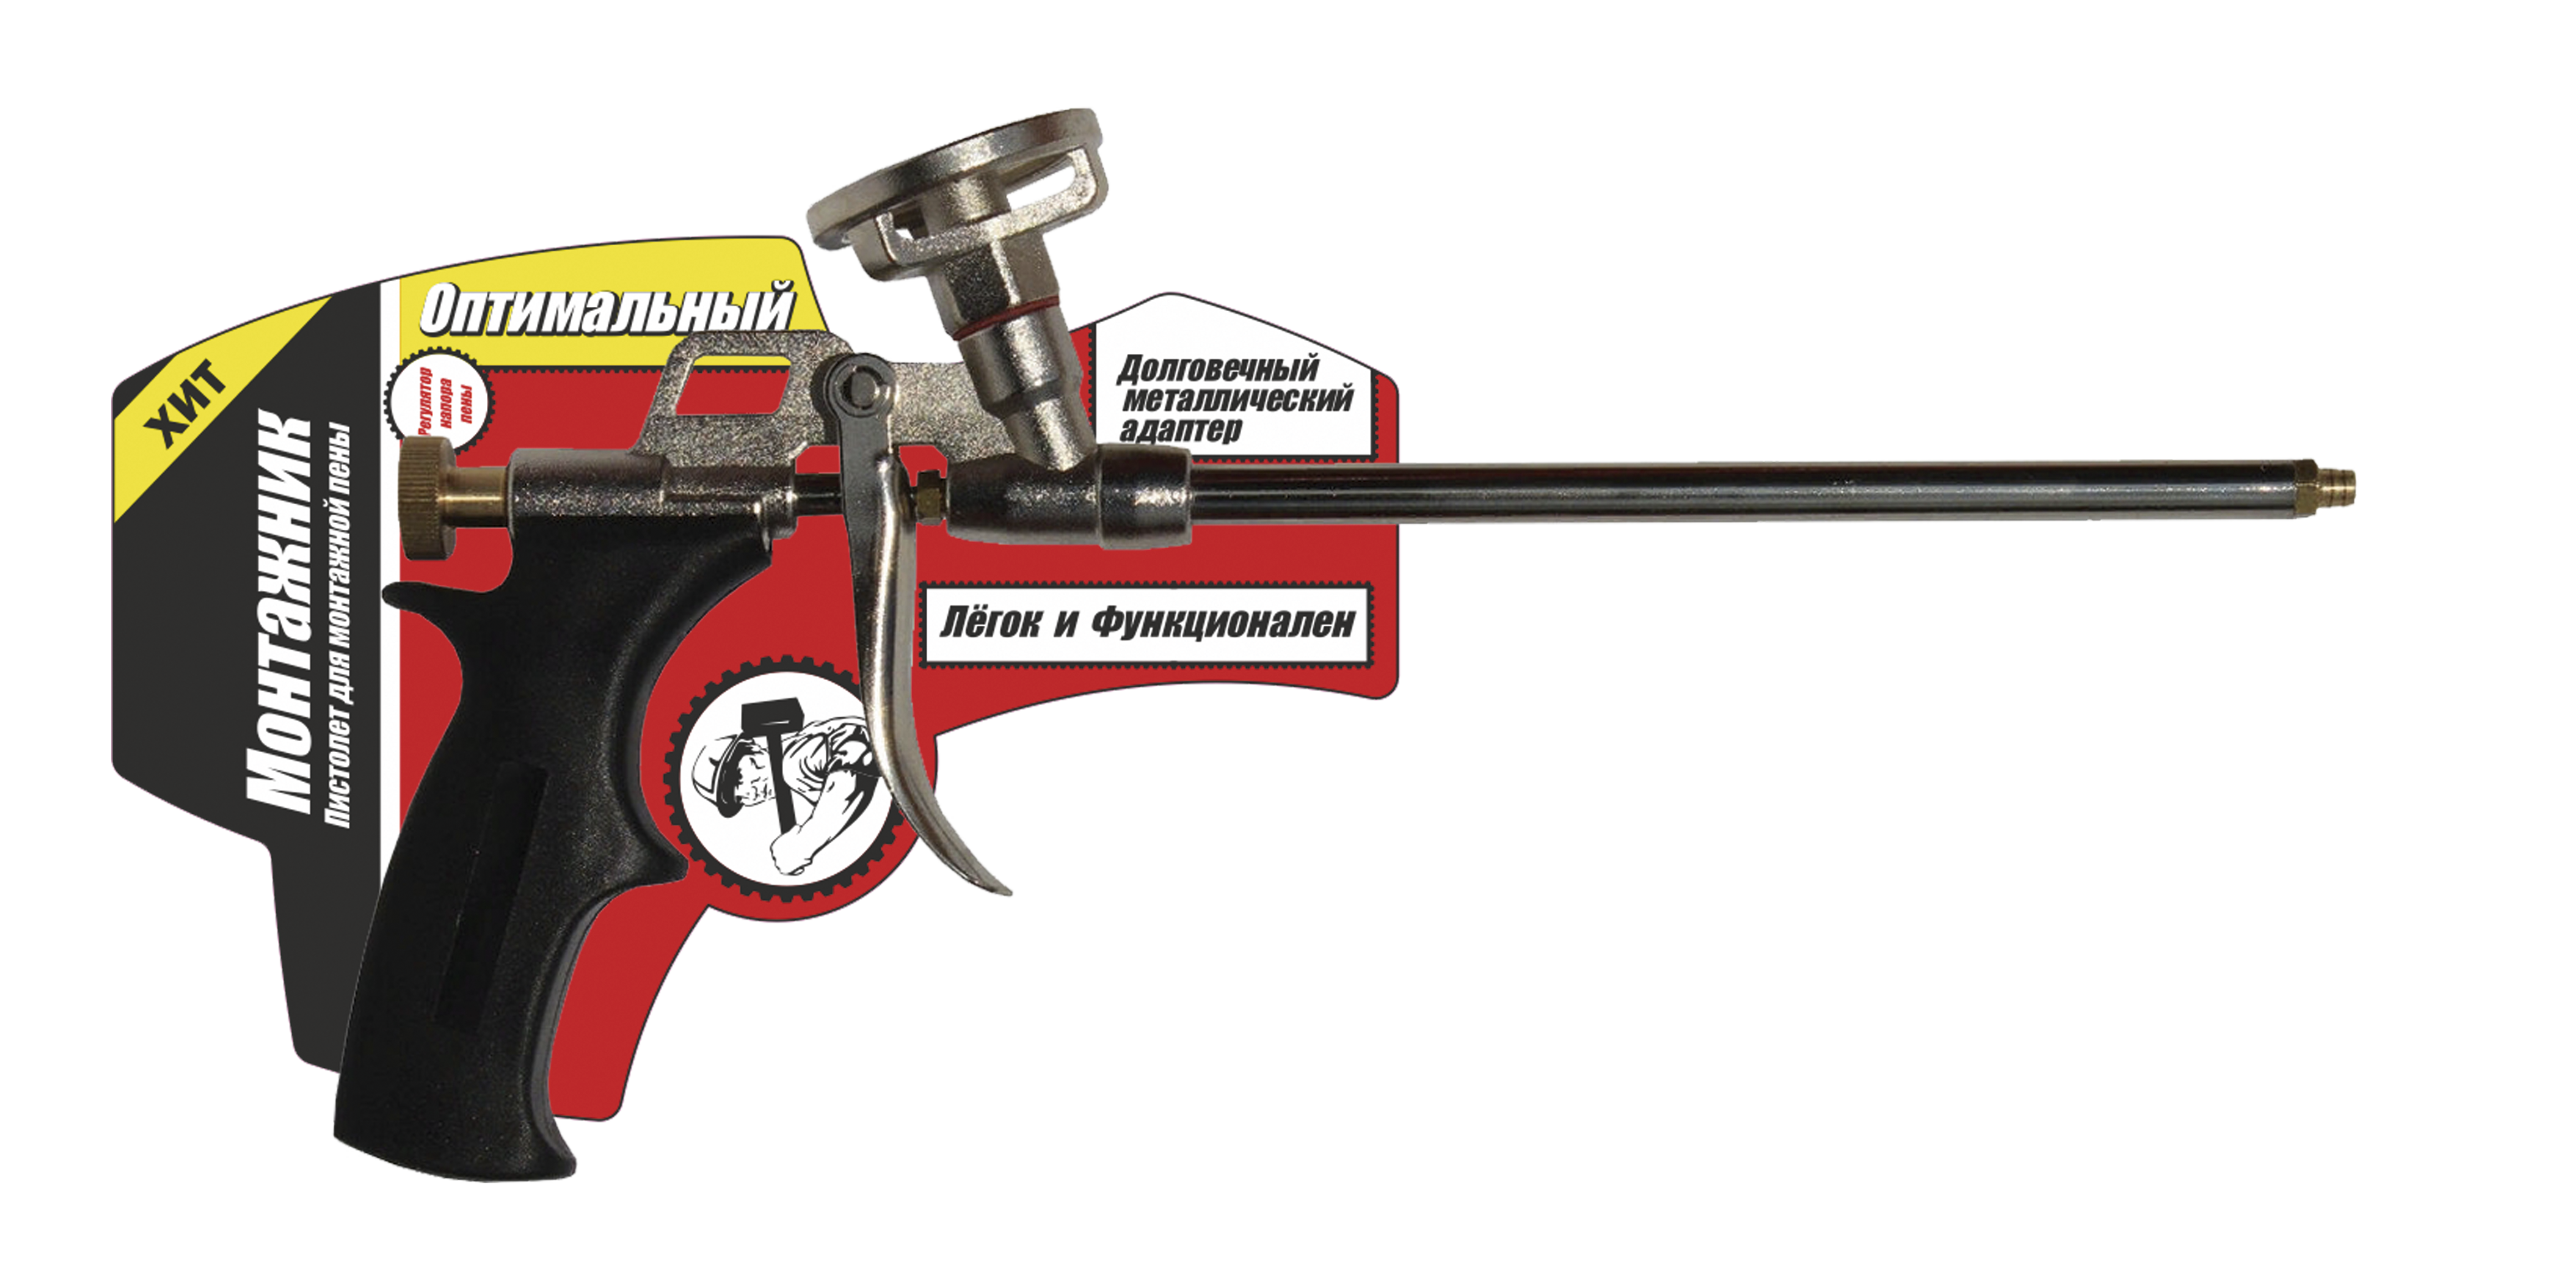 Пистолет для монтажной пены монтажник оптимальный 600002